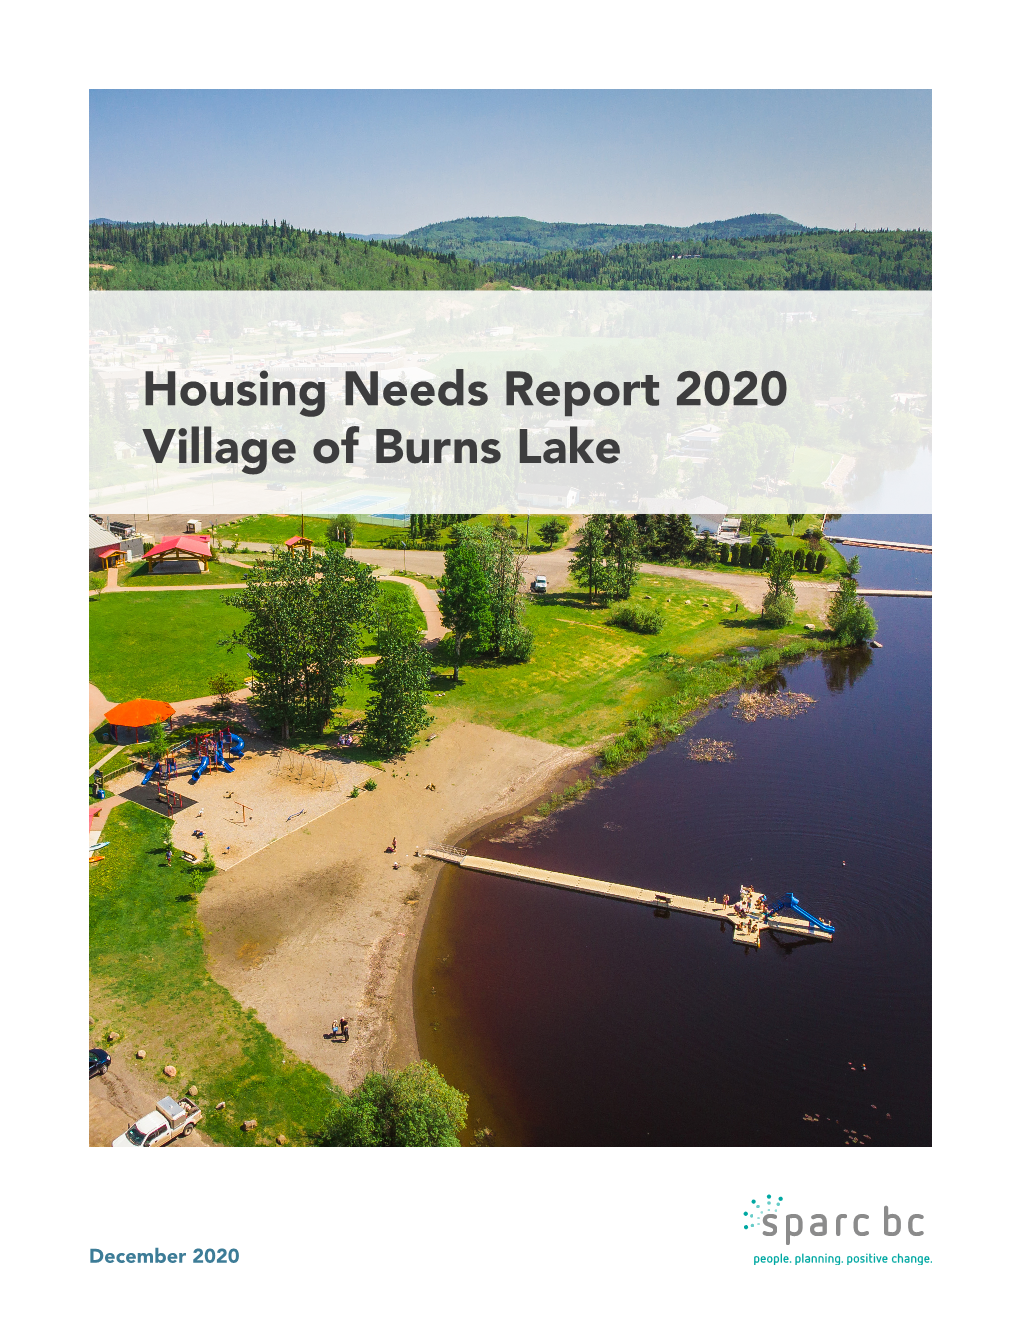 Housing Needs Report 2020 Village of Burns Lake